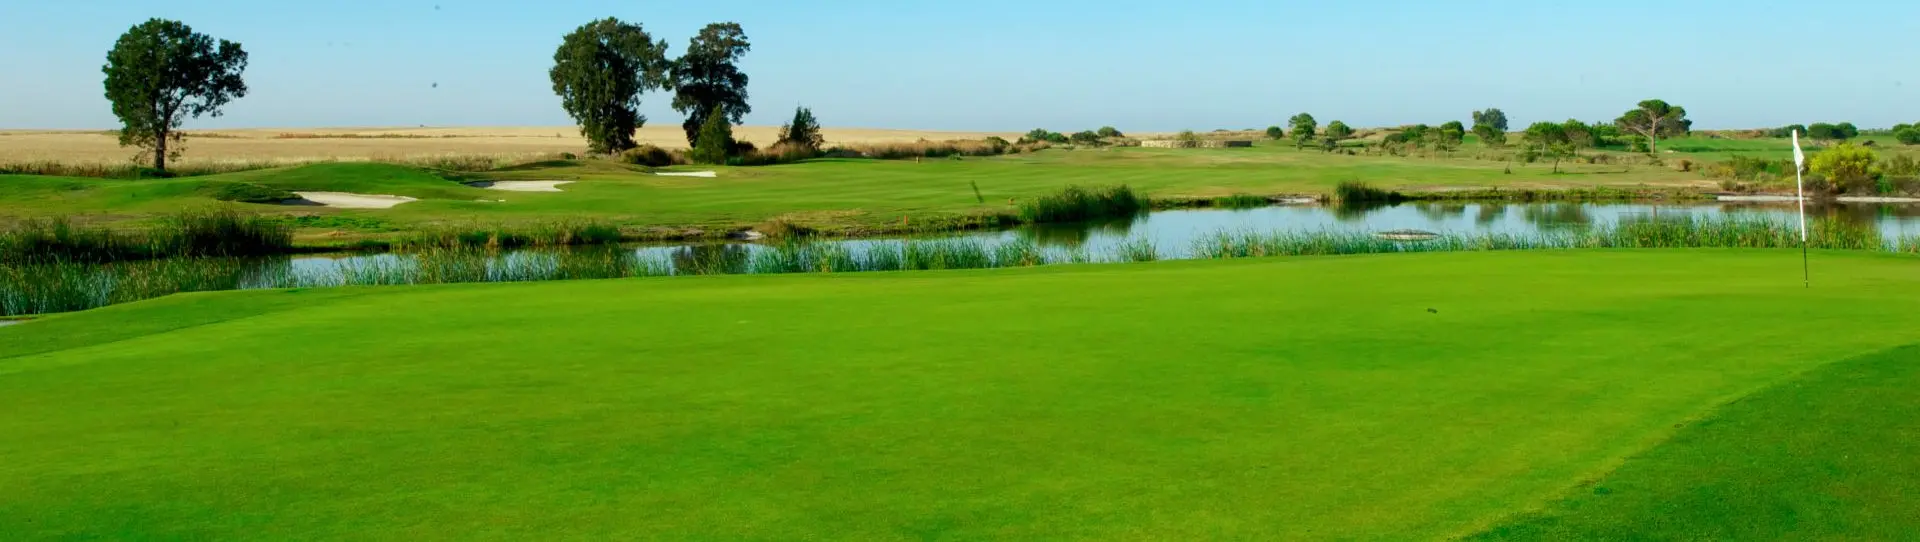 Spain golf courses - La Estancia Golf Course - Photo 1